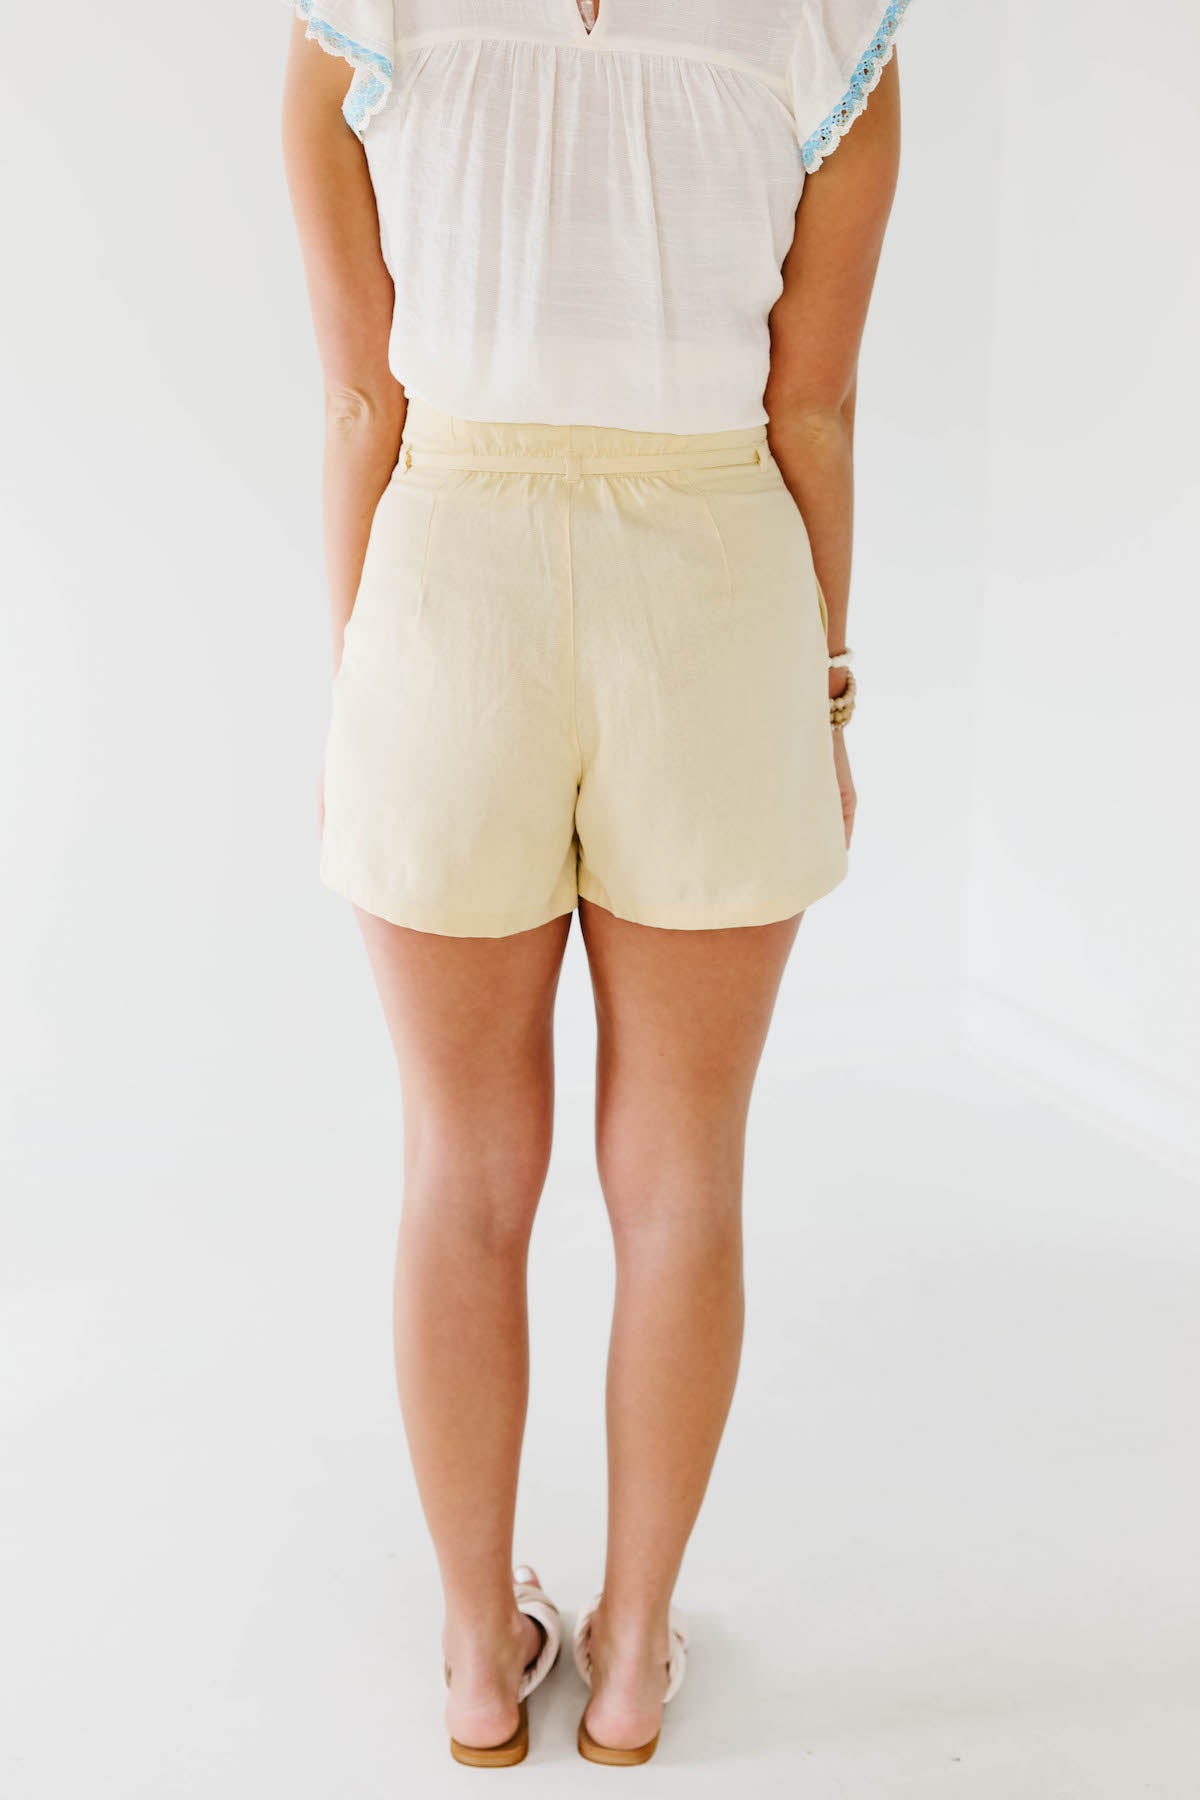 The Celeste Linen Shorts - FINAL SALE